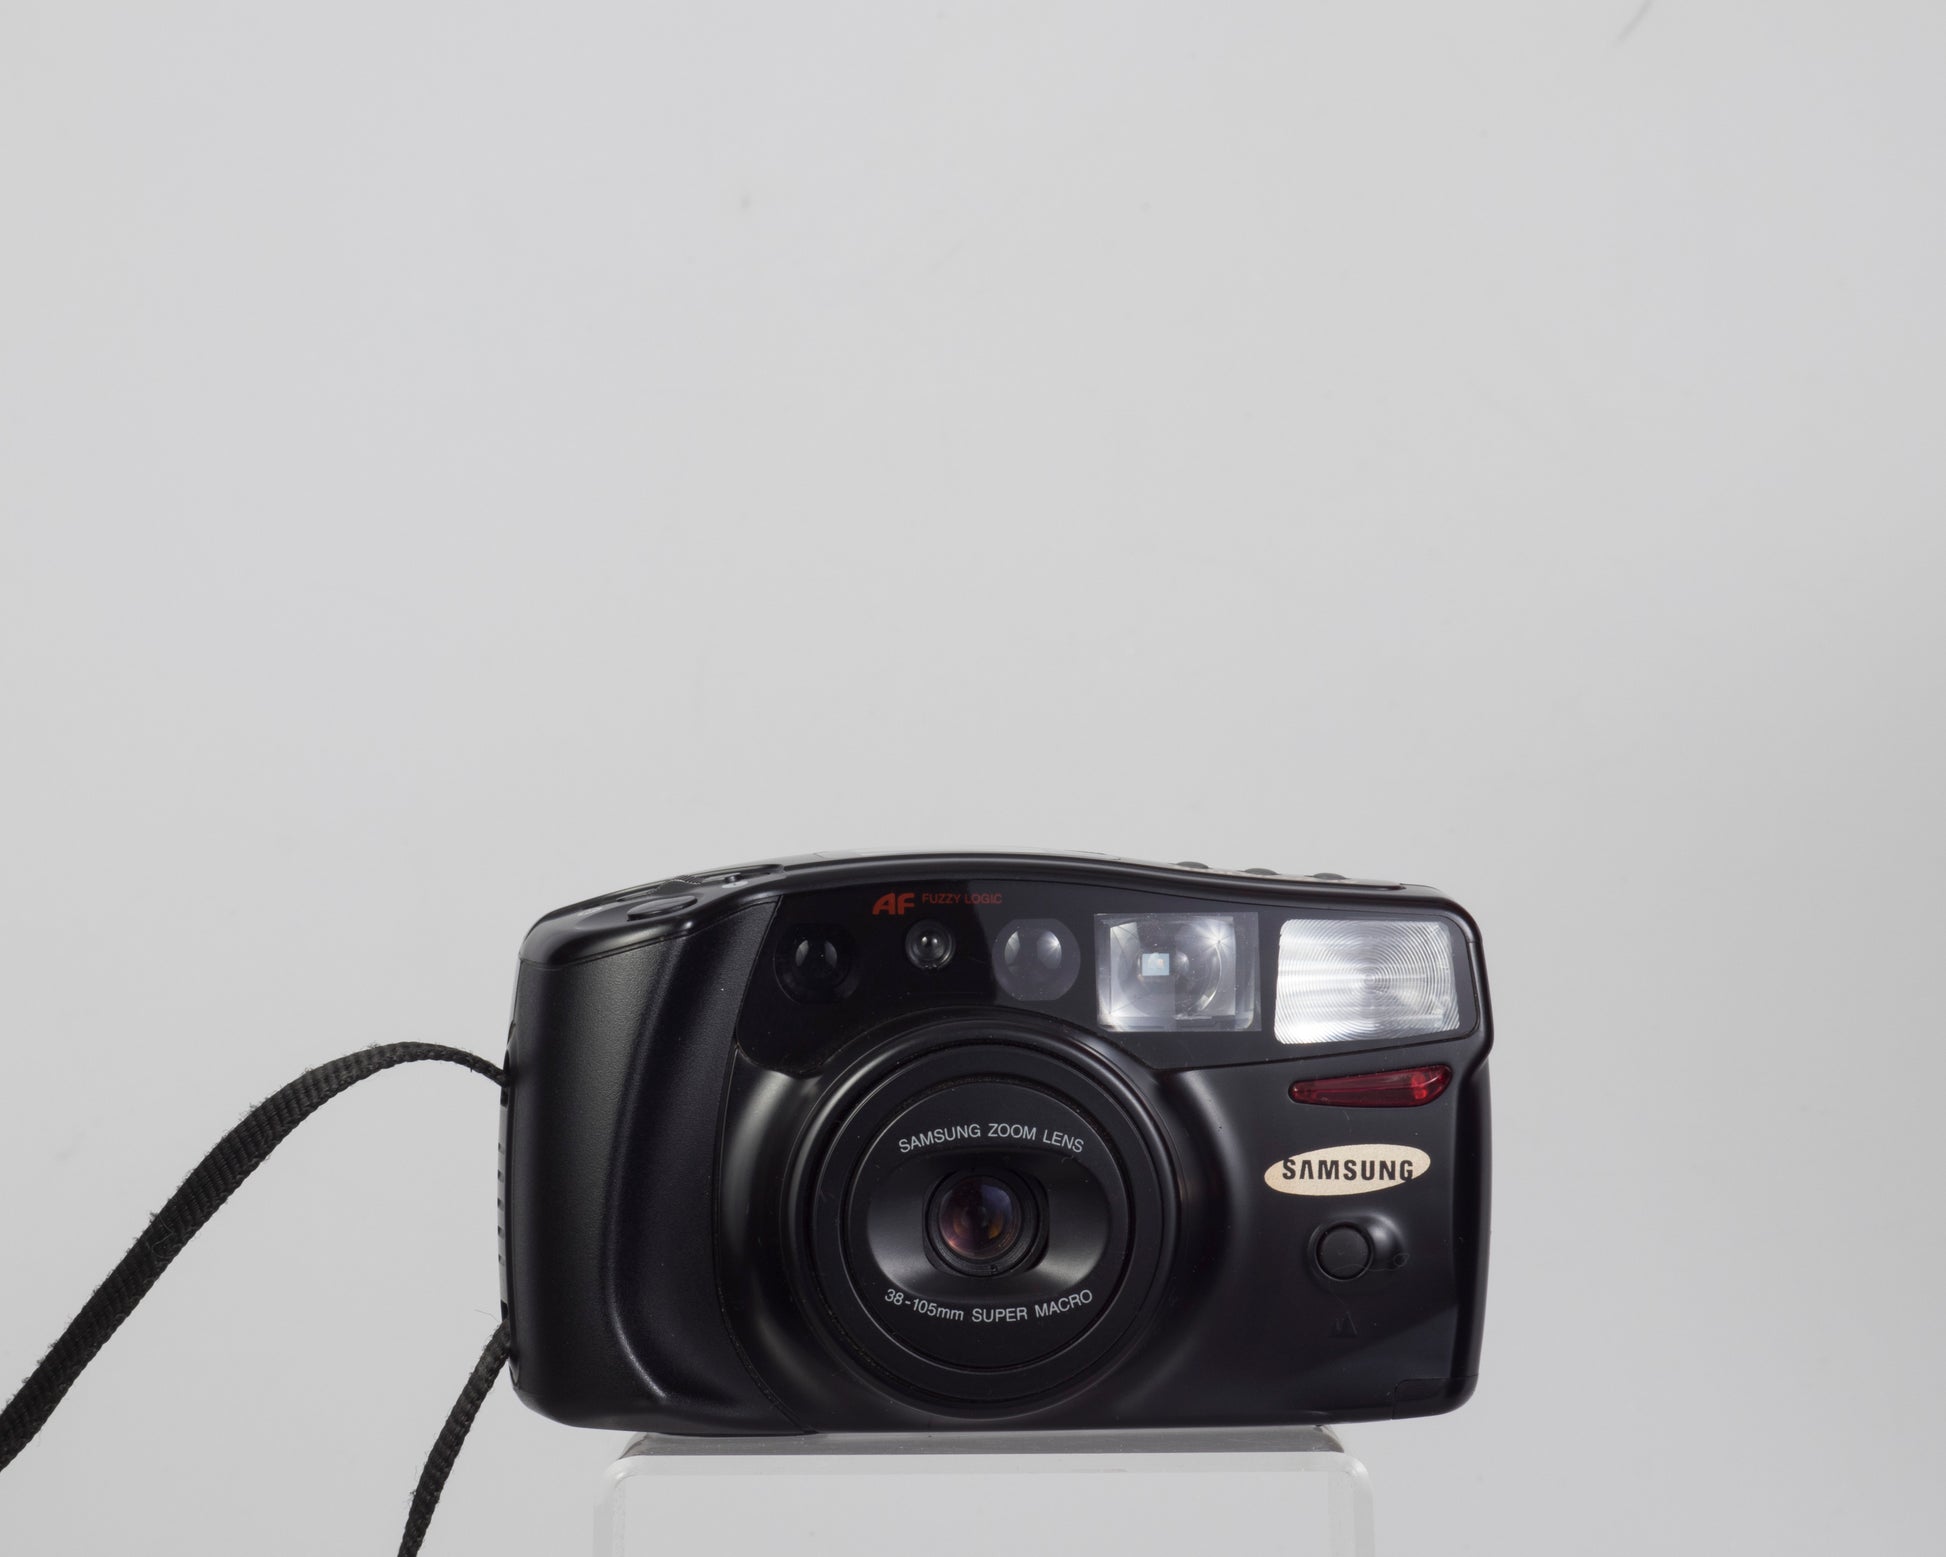 The Samsung AF Zoom 1050 35mm camera